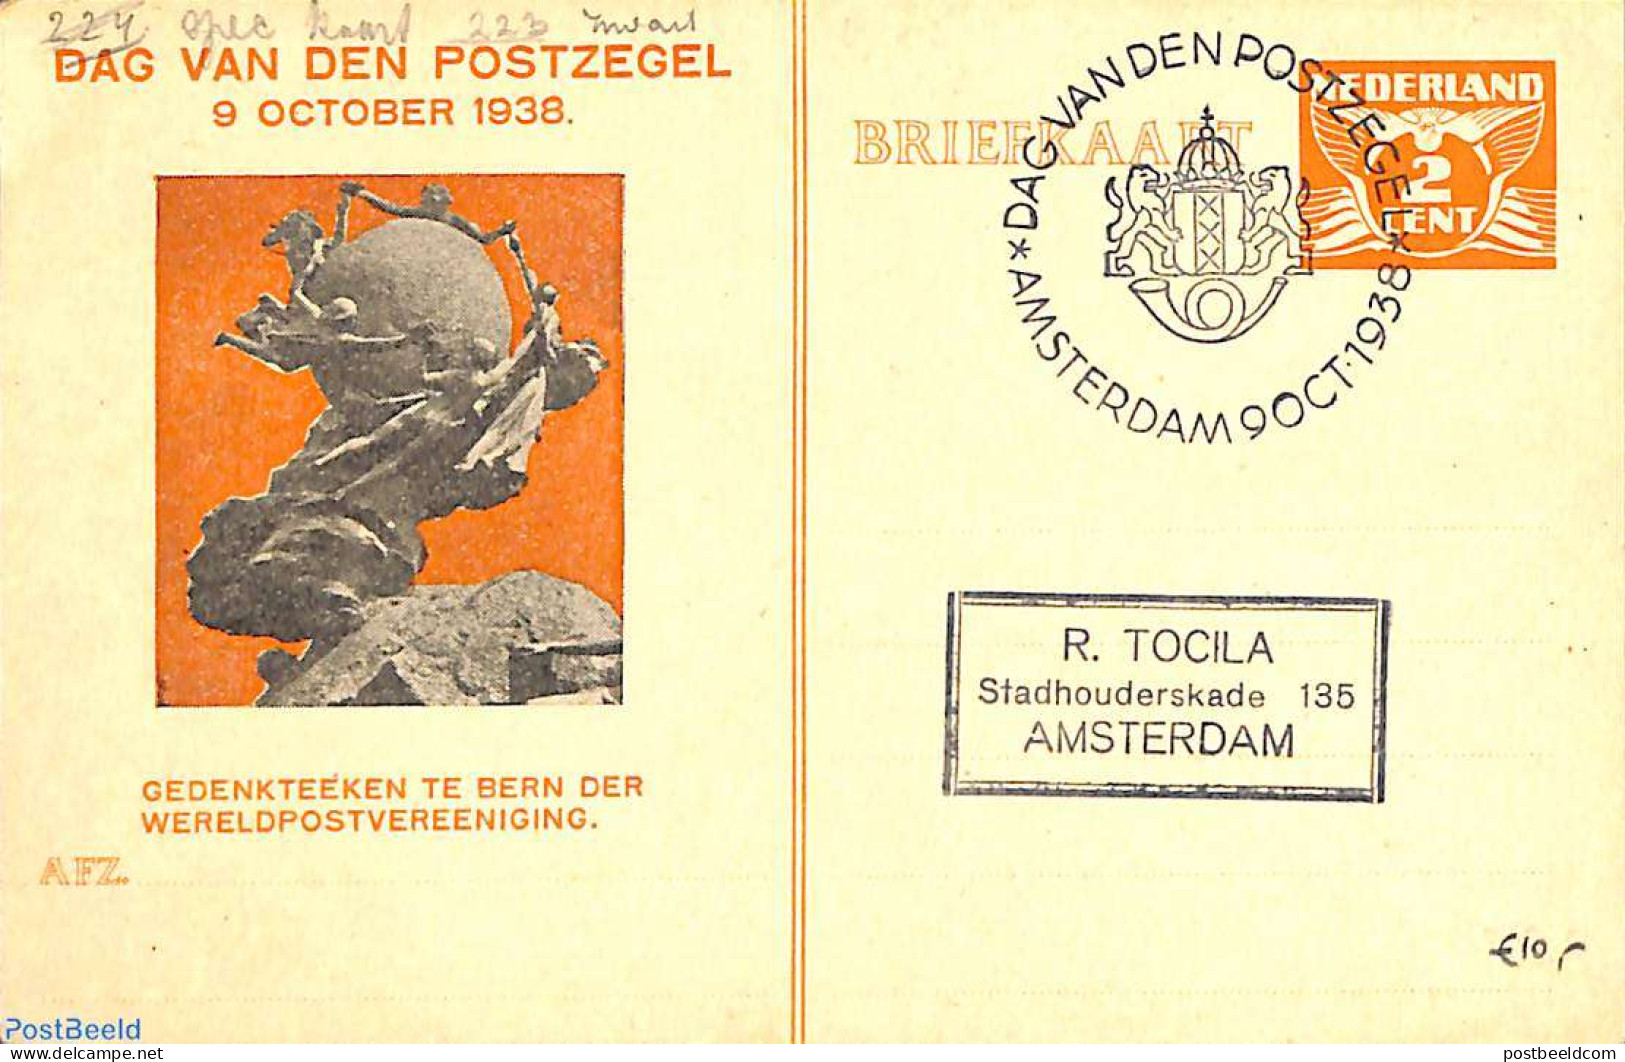 Netherlands, Fdc Stamp Day 1938 Postcard 2c, Stamp Day, Used Postal Stationary, Stamp Day - Tag Der Briefmarke